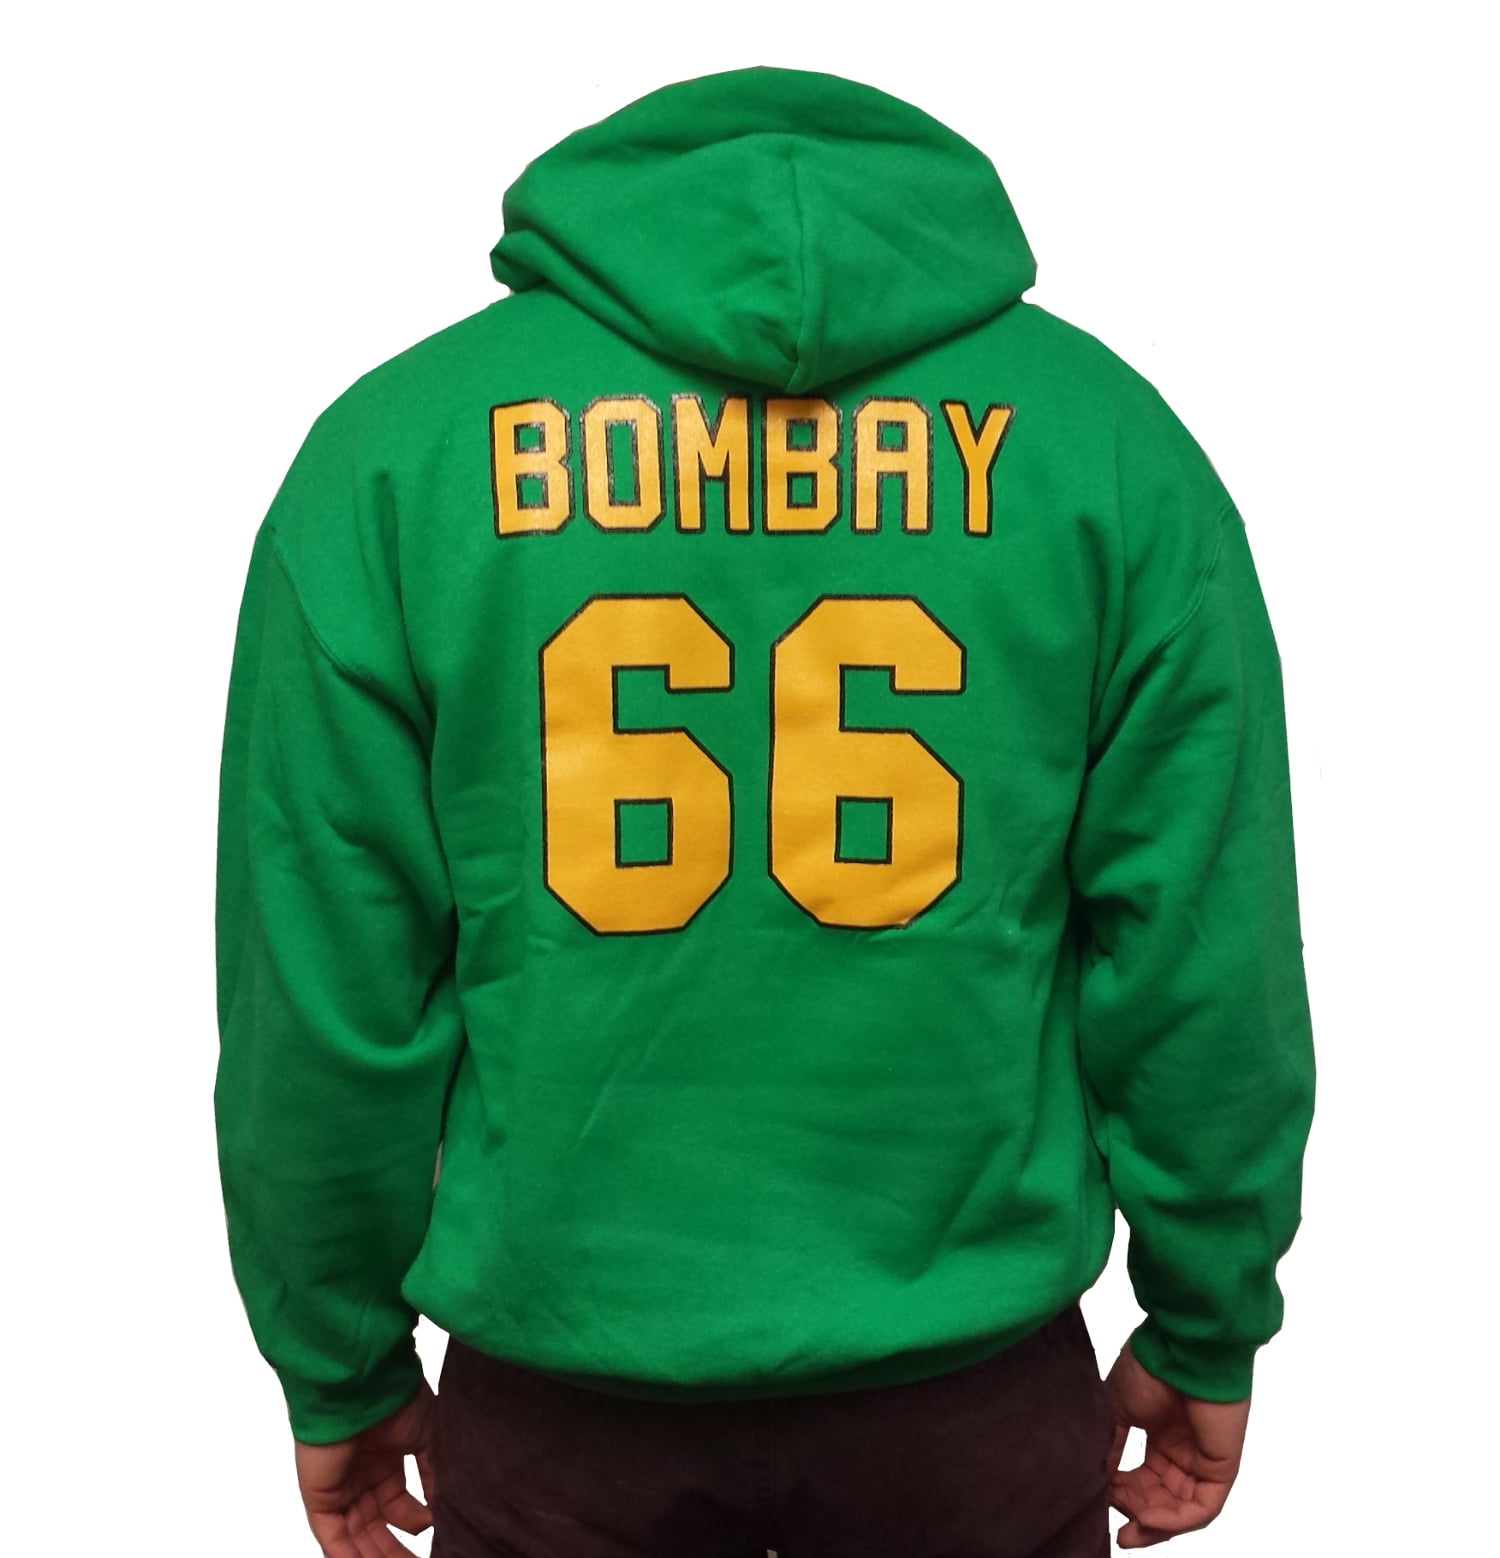 Gordon Bombay #66 Waves Hockey Jersey Mighty Ducks Movie Minnehaha